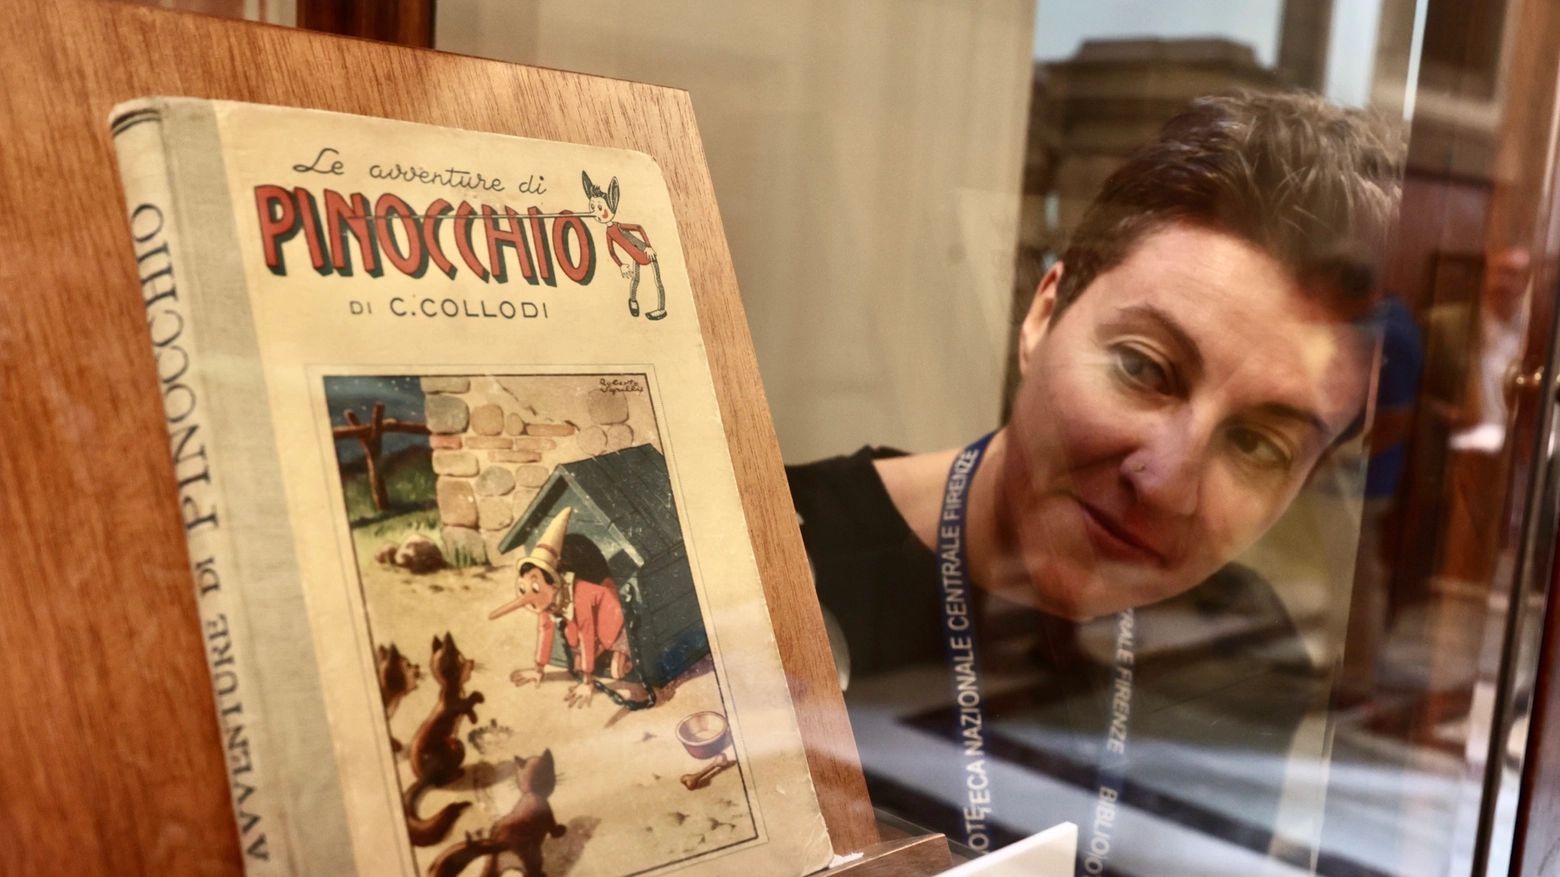 Gli eventi a margine della mostra “Pinocchio 140x140” in corso a Firenze